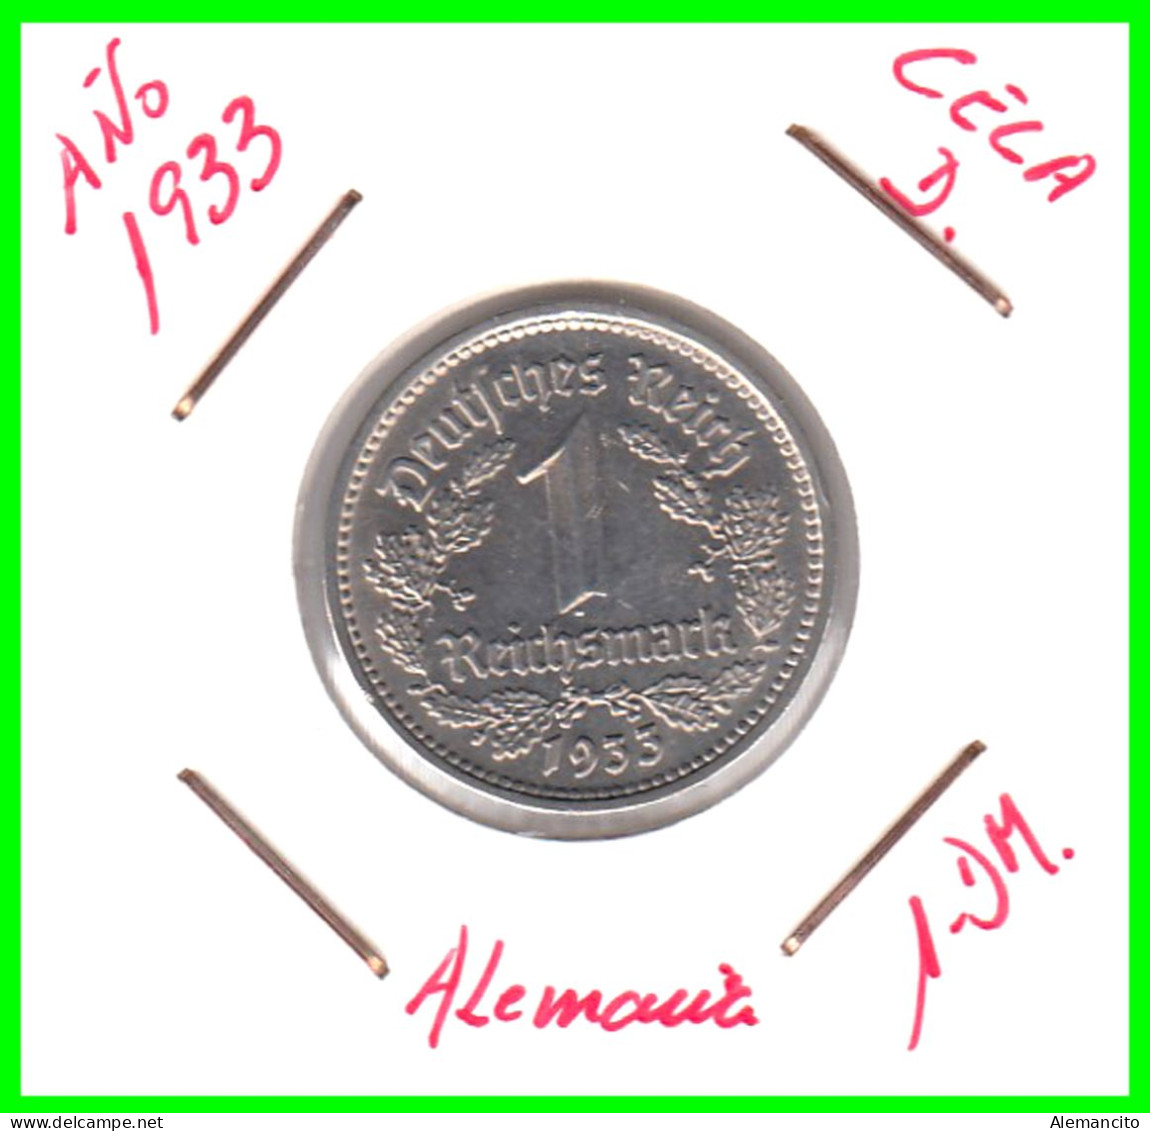 GERMANY TERCER REICH 1 REICHSMARK ( 1933 CECA - D )  ( DEUTSCHES REICHSMARK KM # 78 ) - 1 Reichsmark